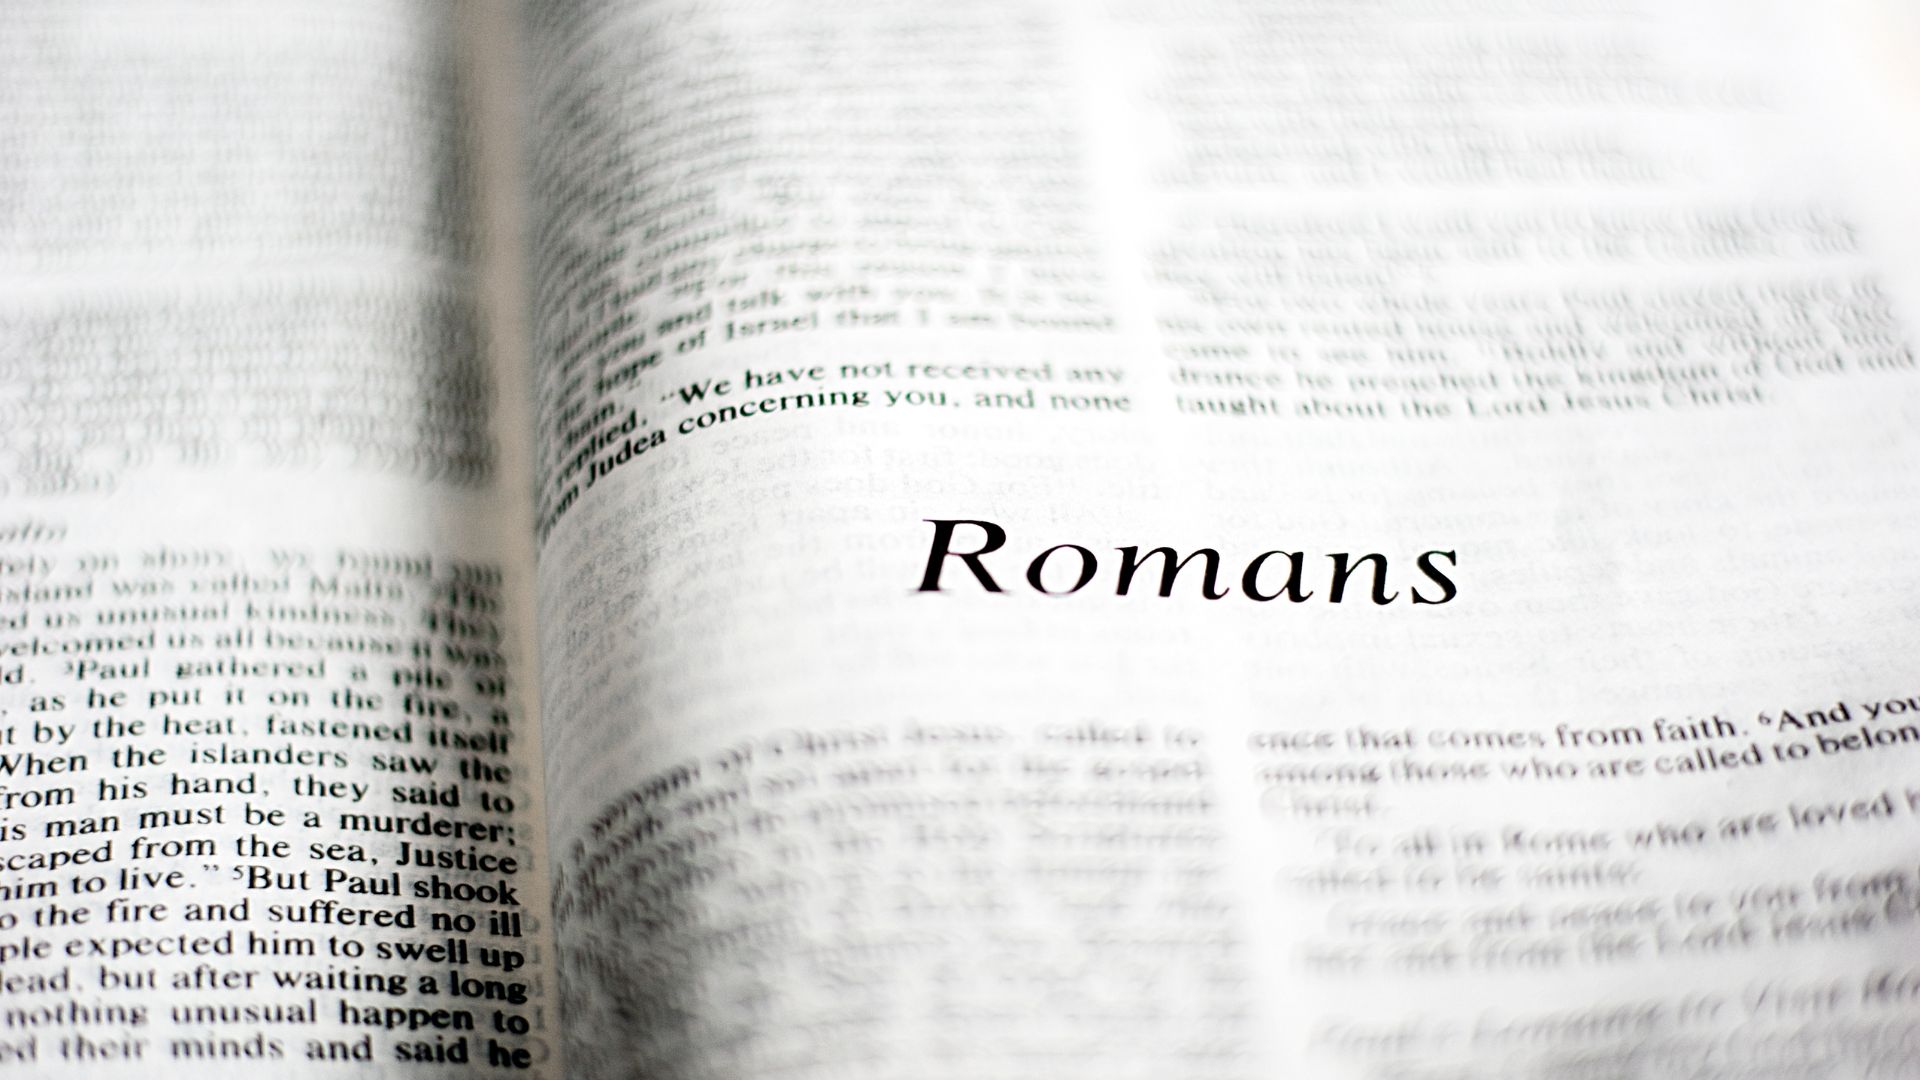 Bíblia aberta no livro de Romanos